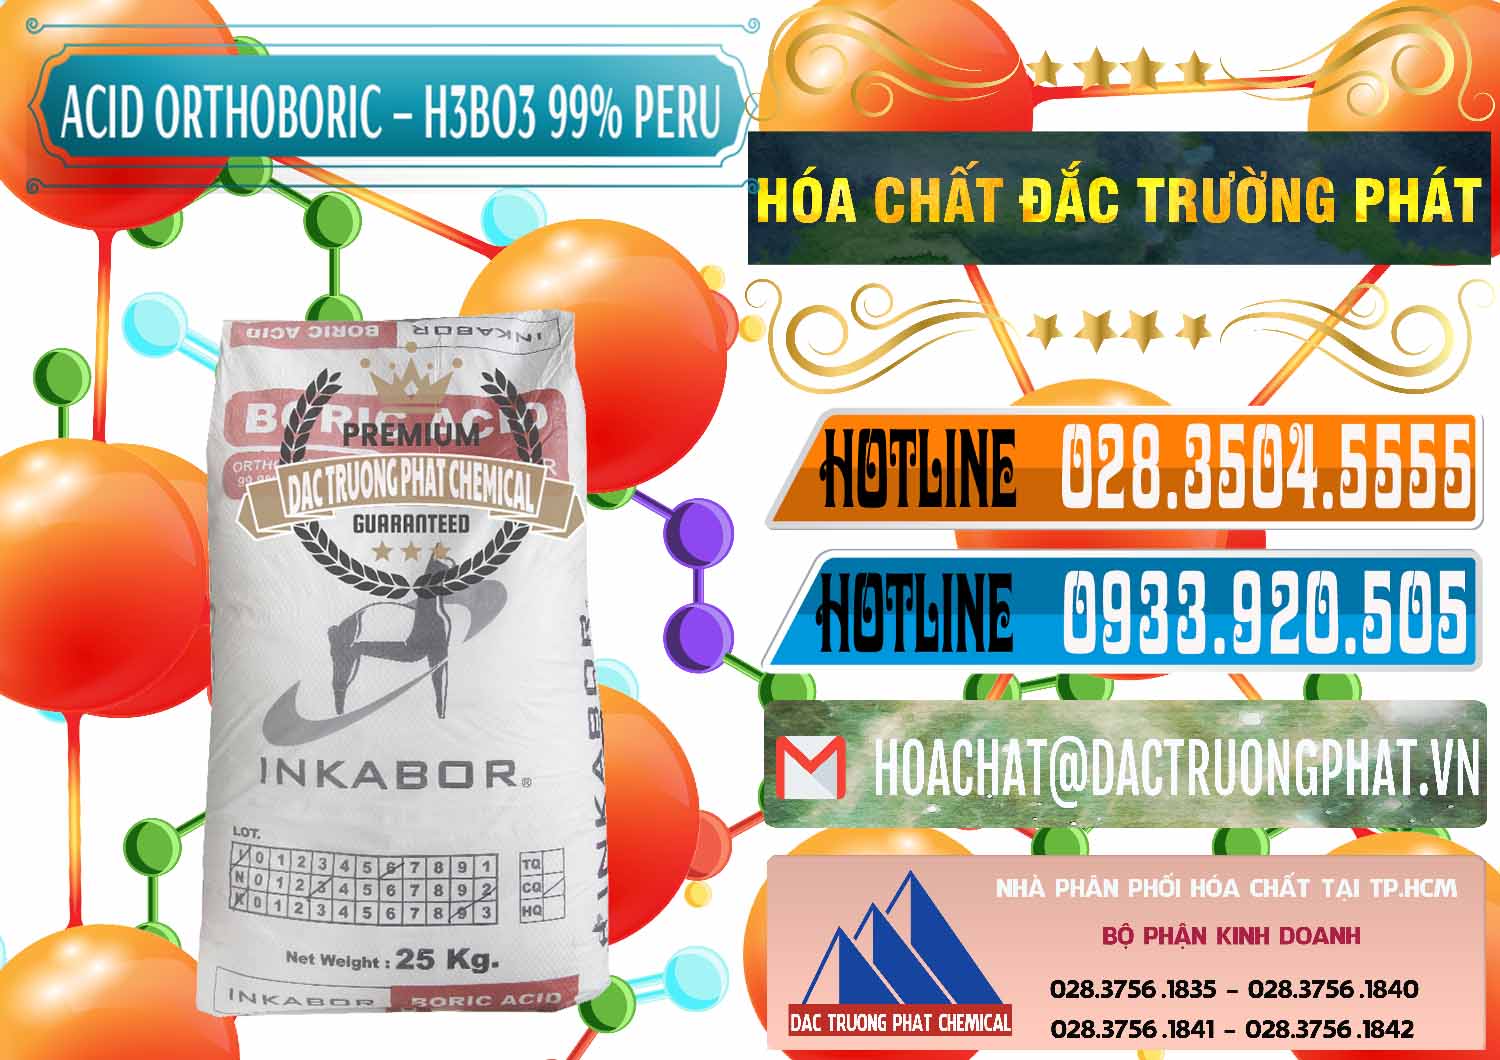 Đơn vị chuyên bán và cung ứng Acid Boric – Axit Boric H3BO3 99% Inkabor Peru - 0280 - Cung cấp và nhập khẩu hóa chất tại TP.HCM - stmp.net